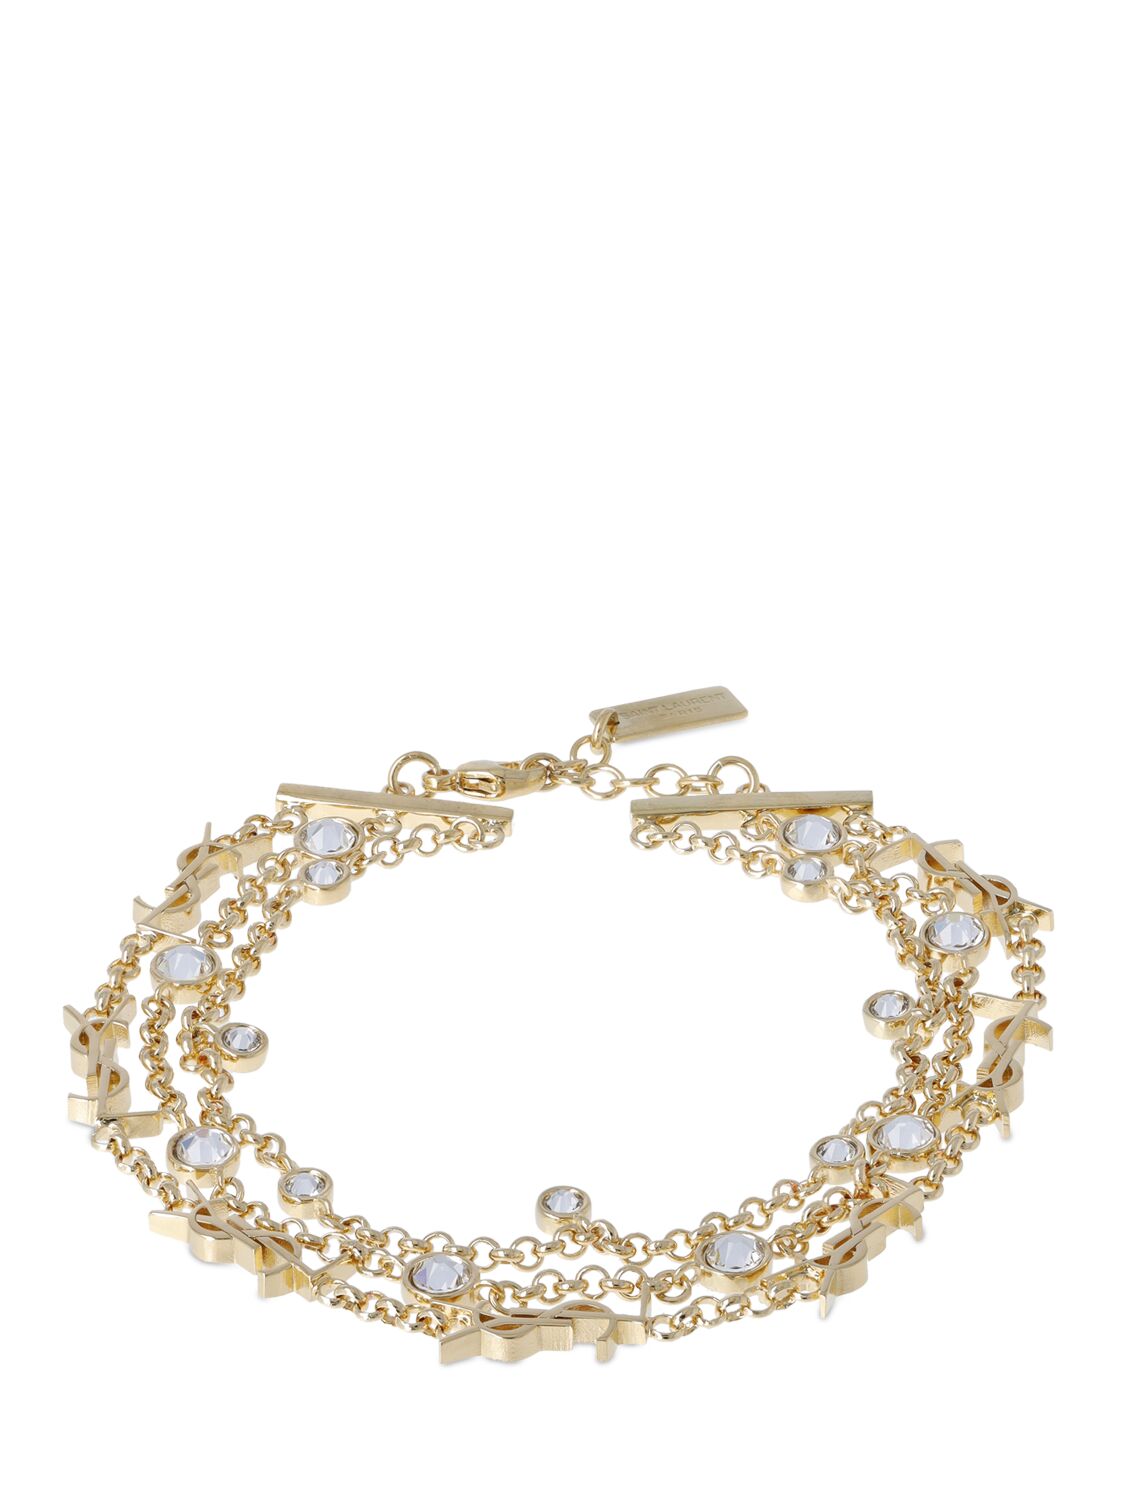 Ysl Crystal & Brass Bracelet